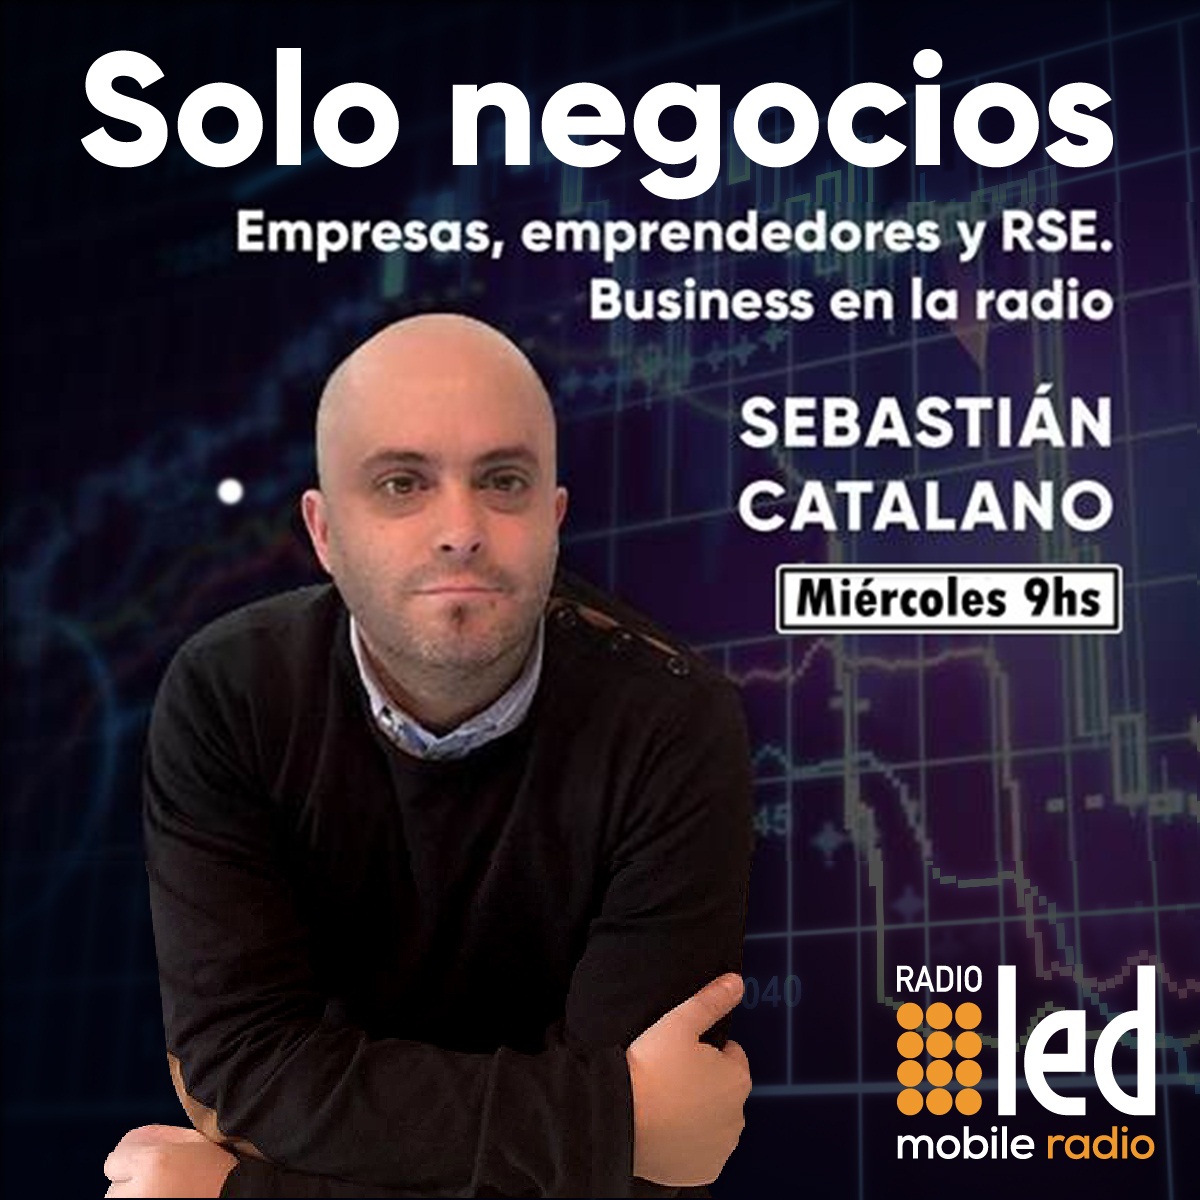 #Podcast Solo Negocios | 30.05: #Economia @kiguel, #Cannabis @JavierHasse, #100más @Quilmes_Cerveza